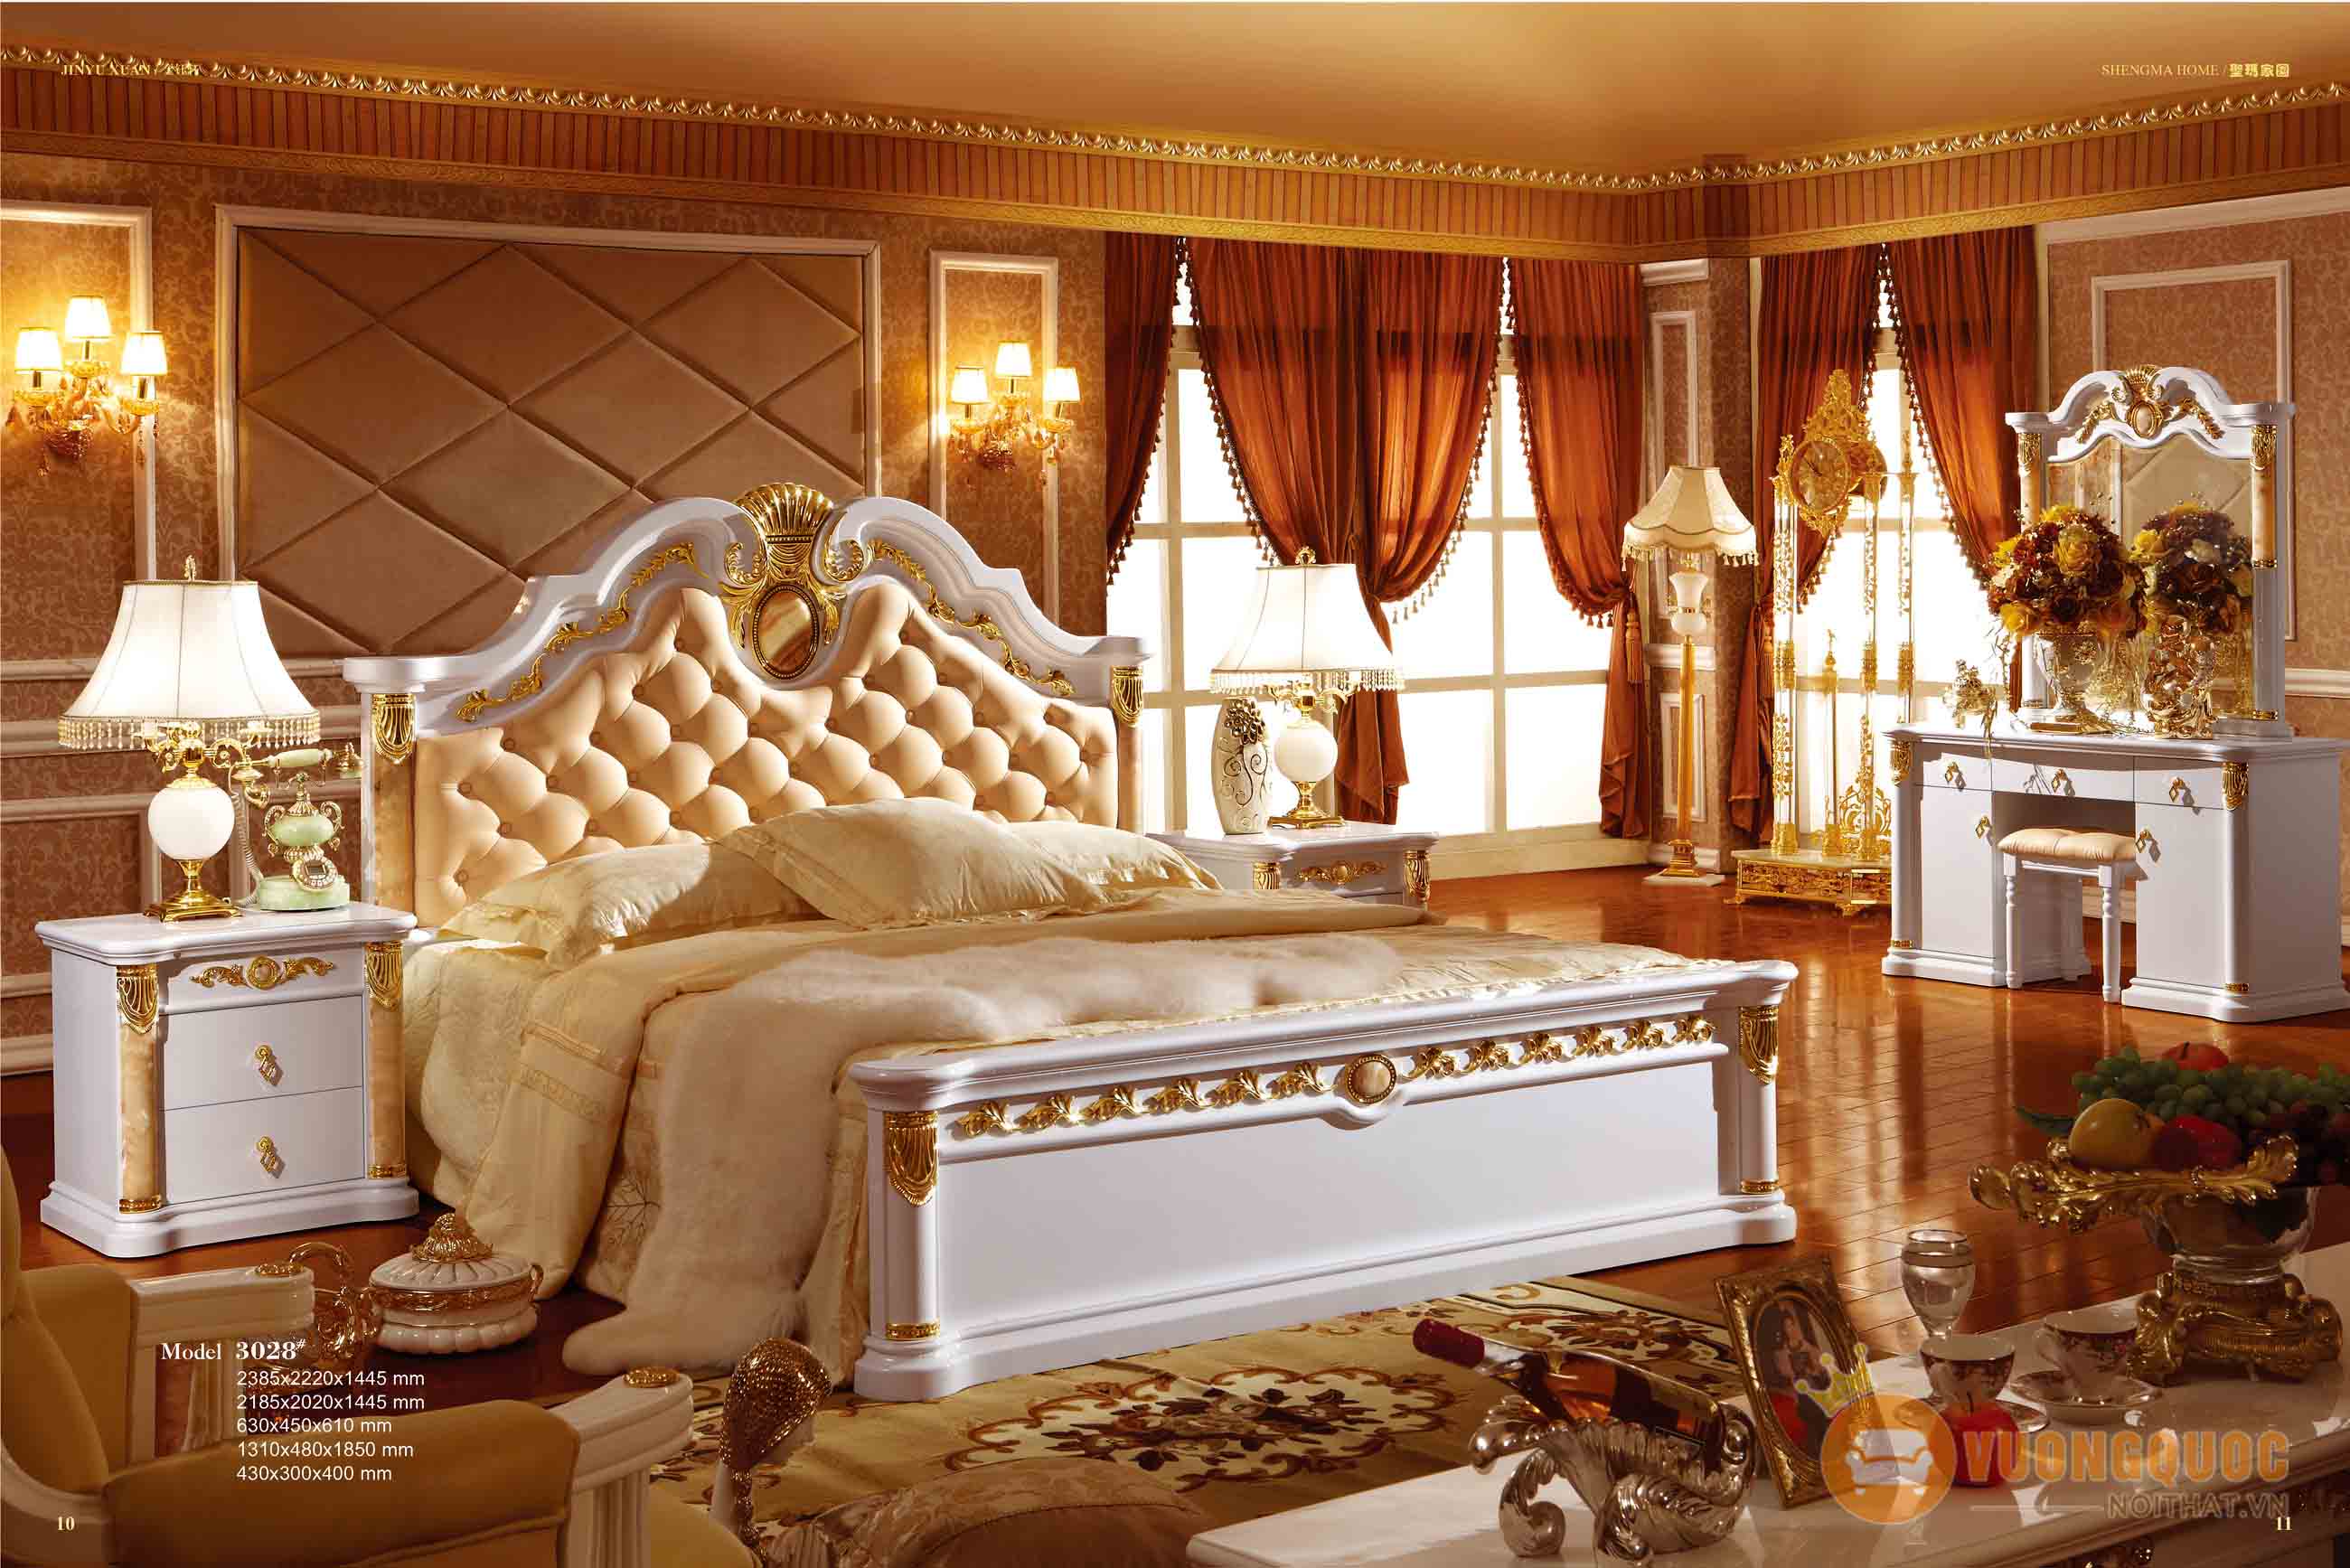 Mẫu giường ngủ cổ điển quý tộc Châu Âu